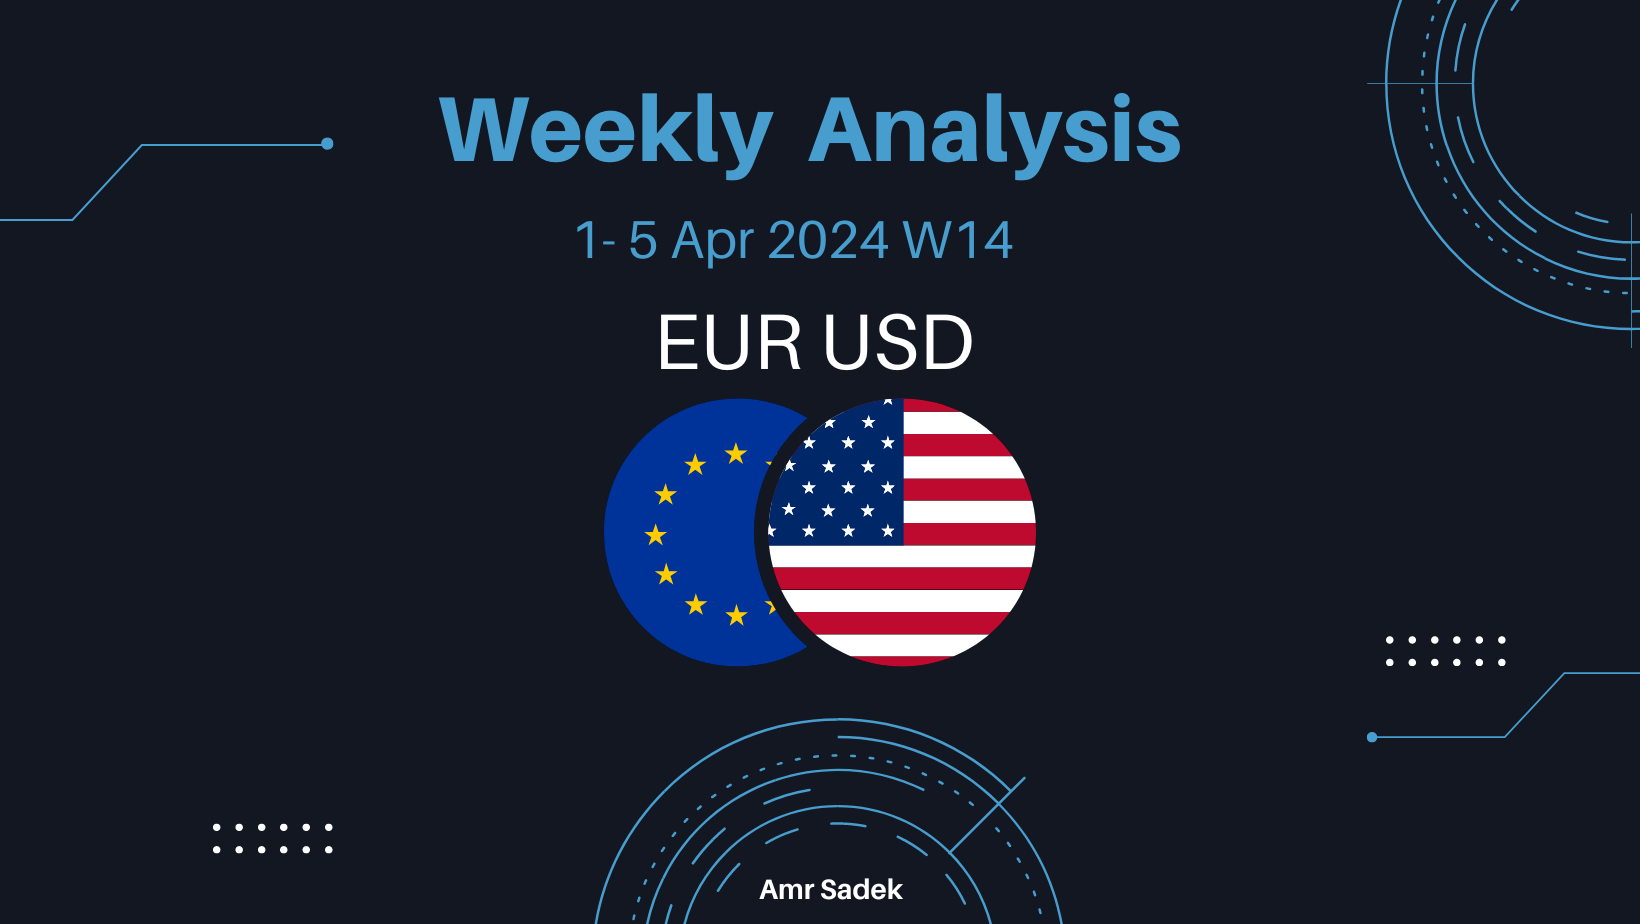 EURUSD 1-5 Apr 2024 W14 Weekly Analysis – NFP Week!